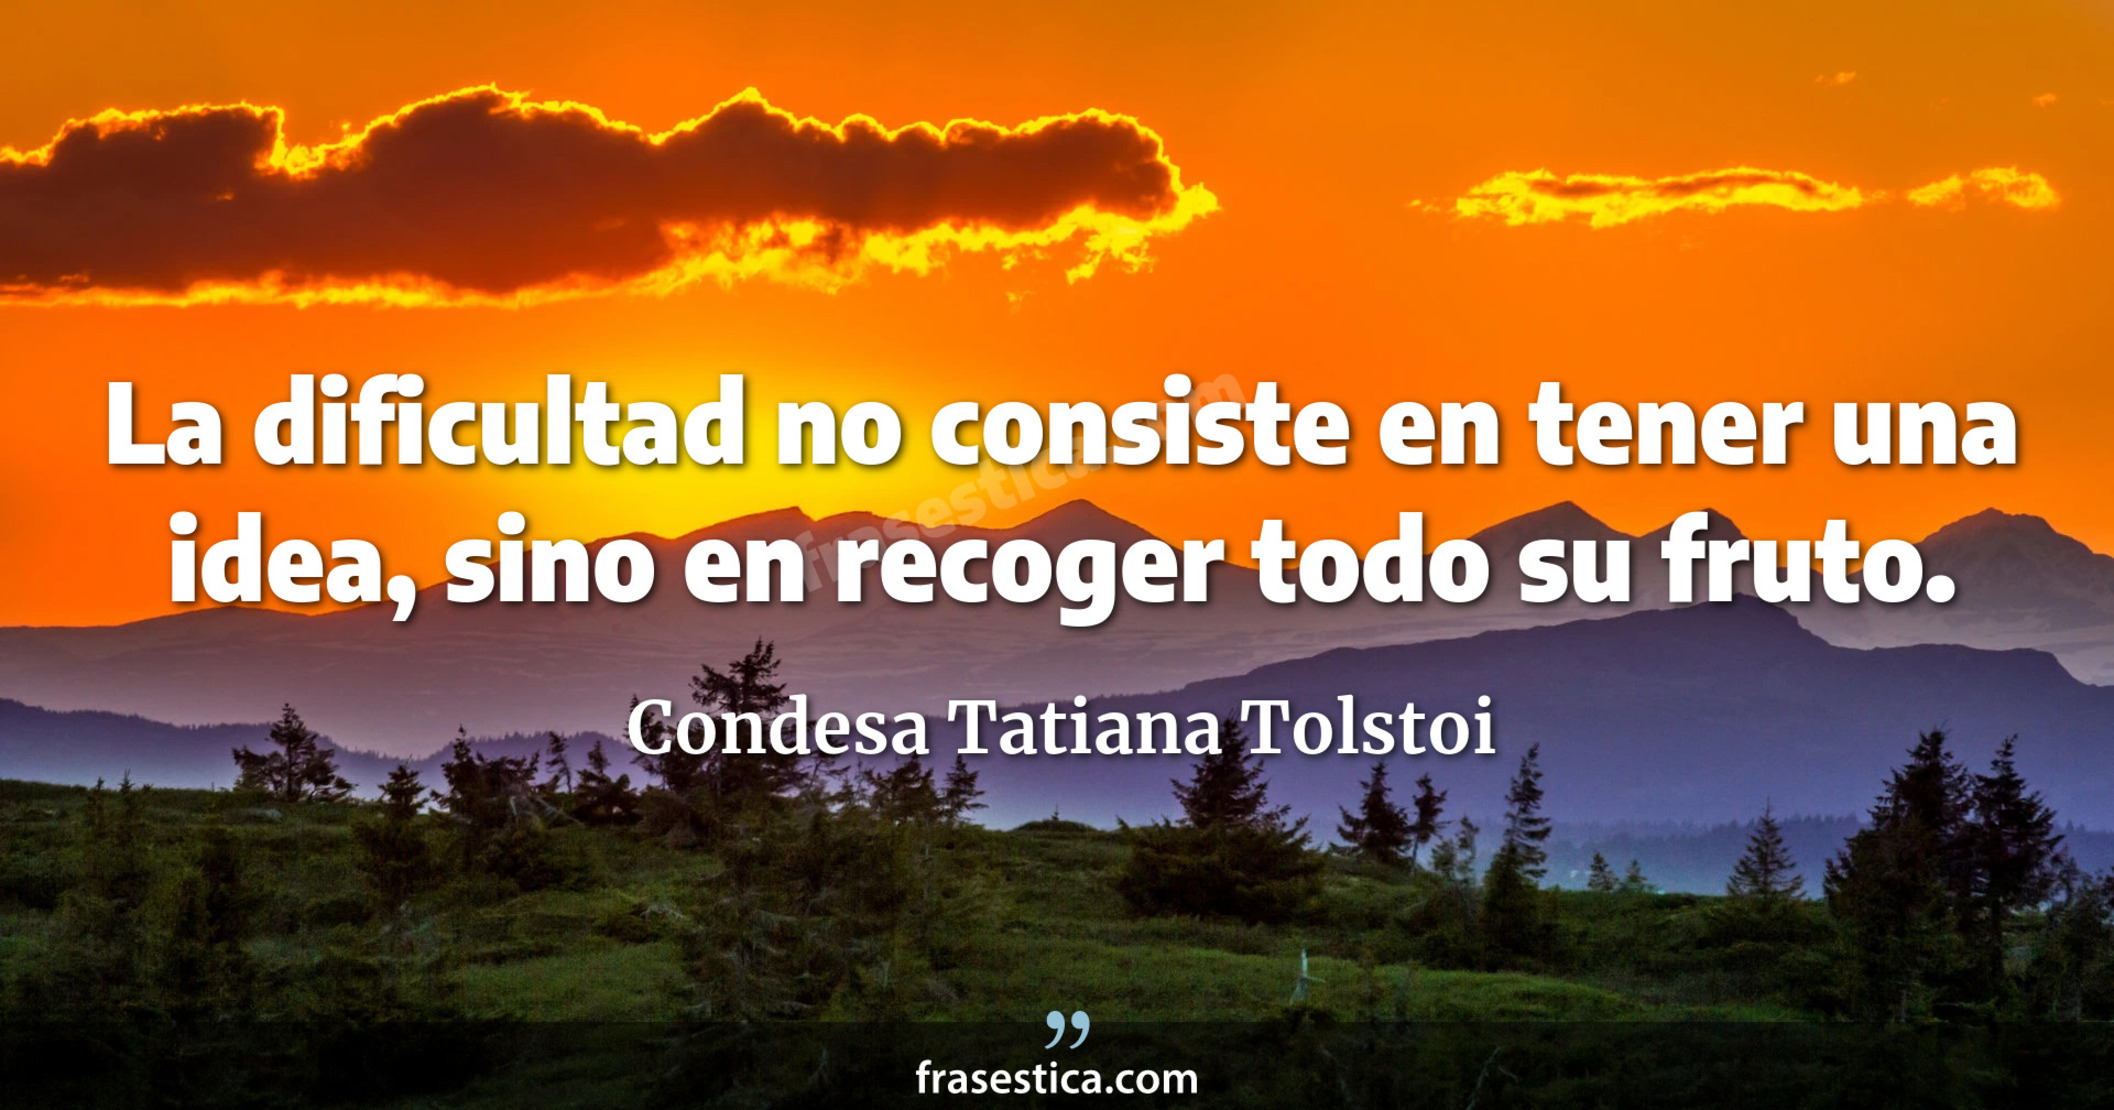 La dificultad no consiste en tener una idea, sino en recoger todo su fruto. - Condesa Tatiana Tolstoi